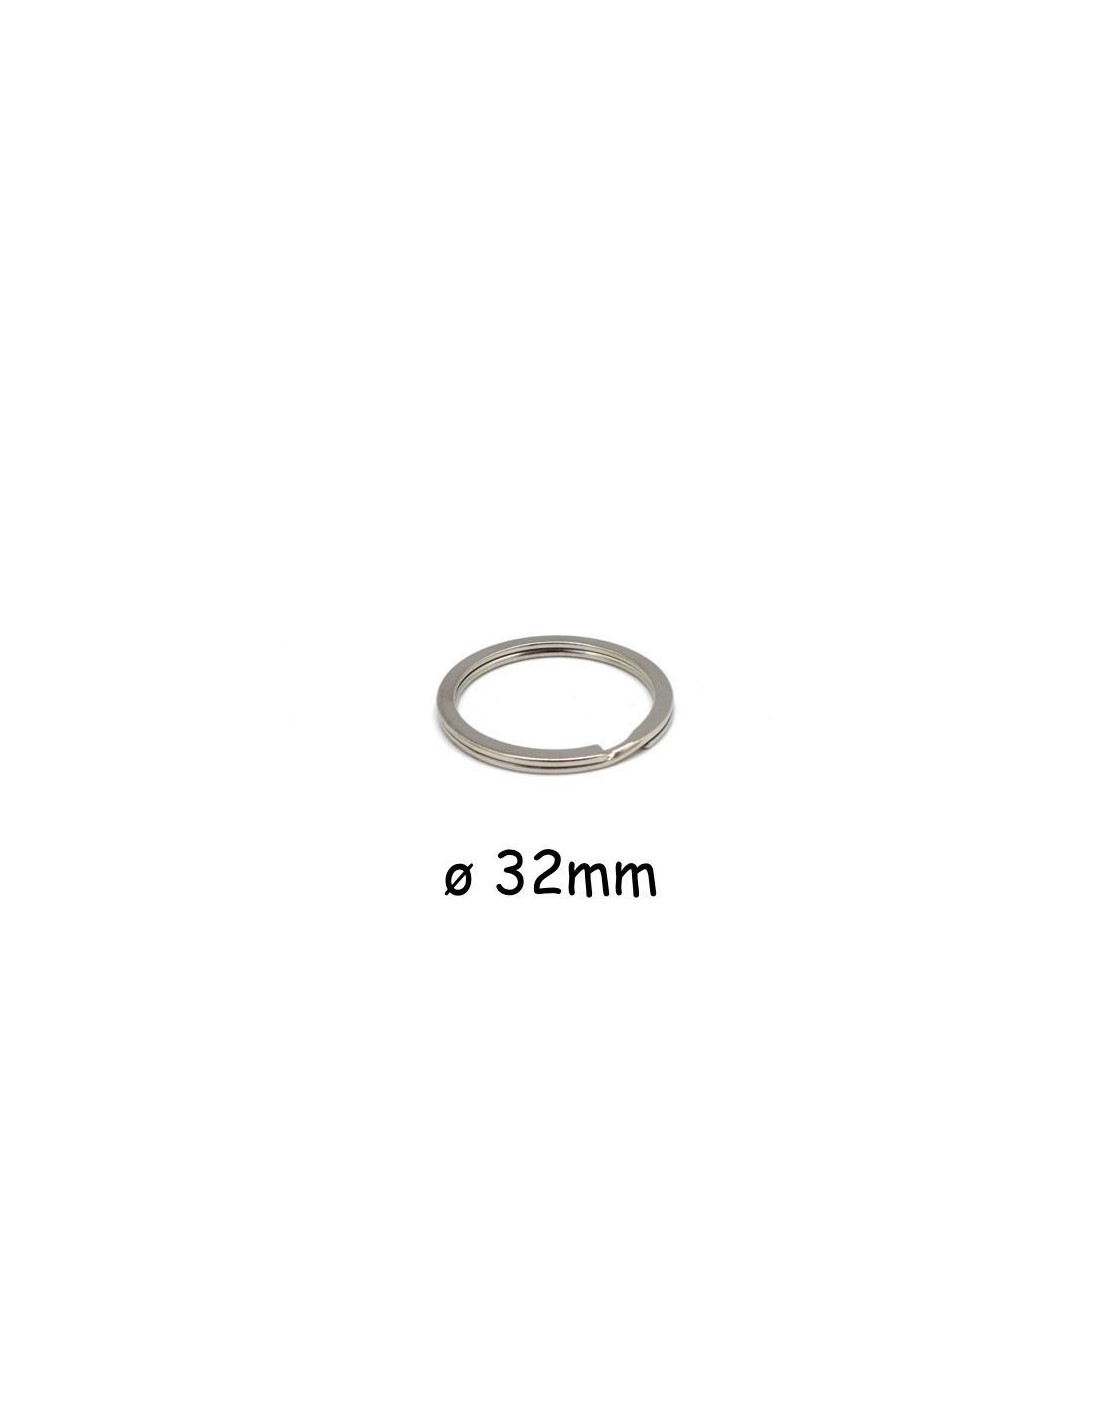 Fermoirs mousqueton 32mm avec anneau porte-clef 20mm ARGENT